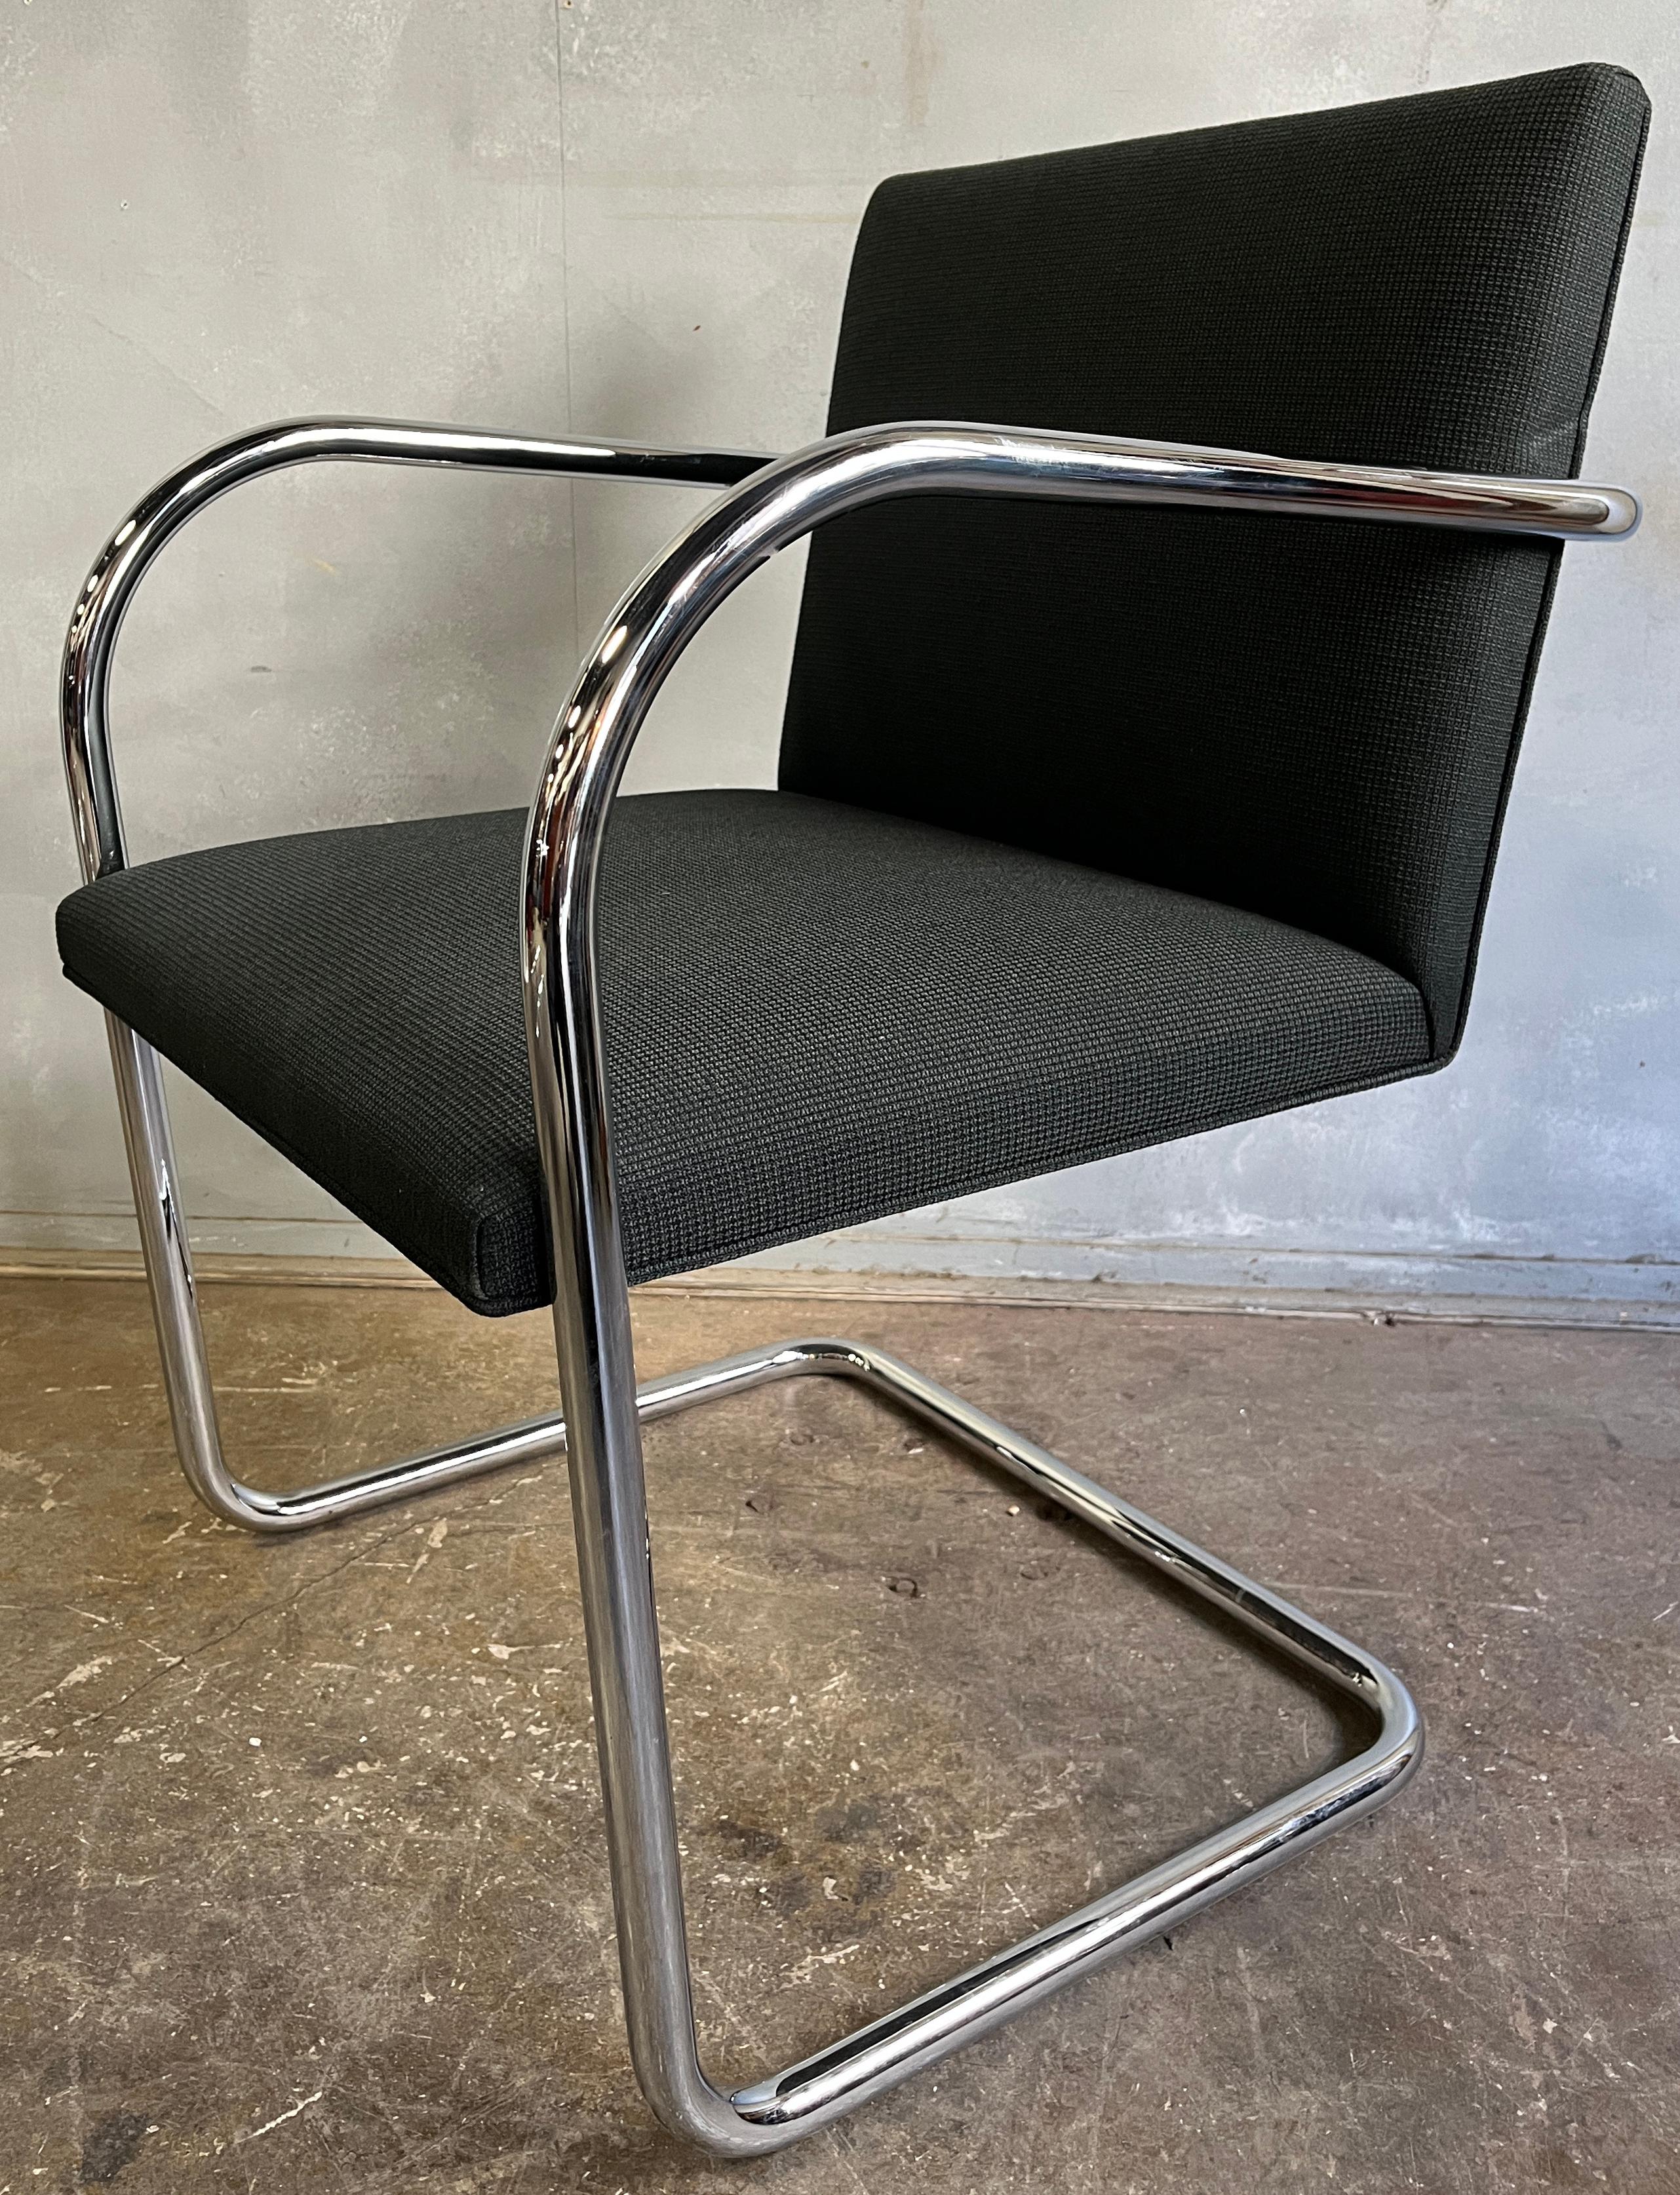 Pour votre considération ces chaises noires Brno rembourrées pour Knoll, conçues par le maître architecte moderniste en 1930. Ces icônes du design Bauhaus expriment la philosophie de l'époque, selon laquelle la forme suit la fonction. Le cadre